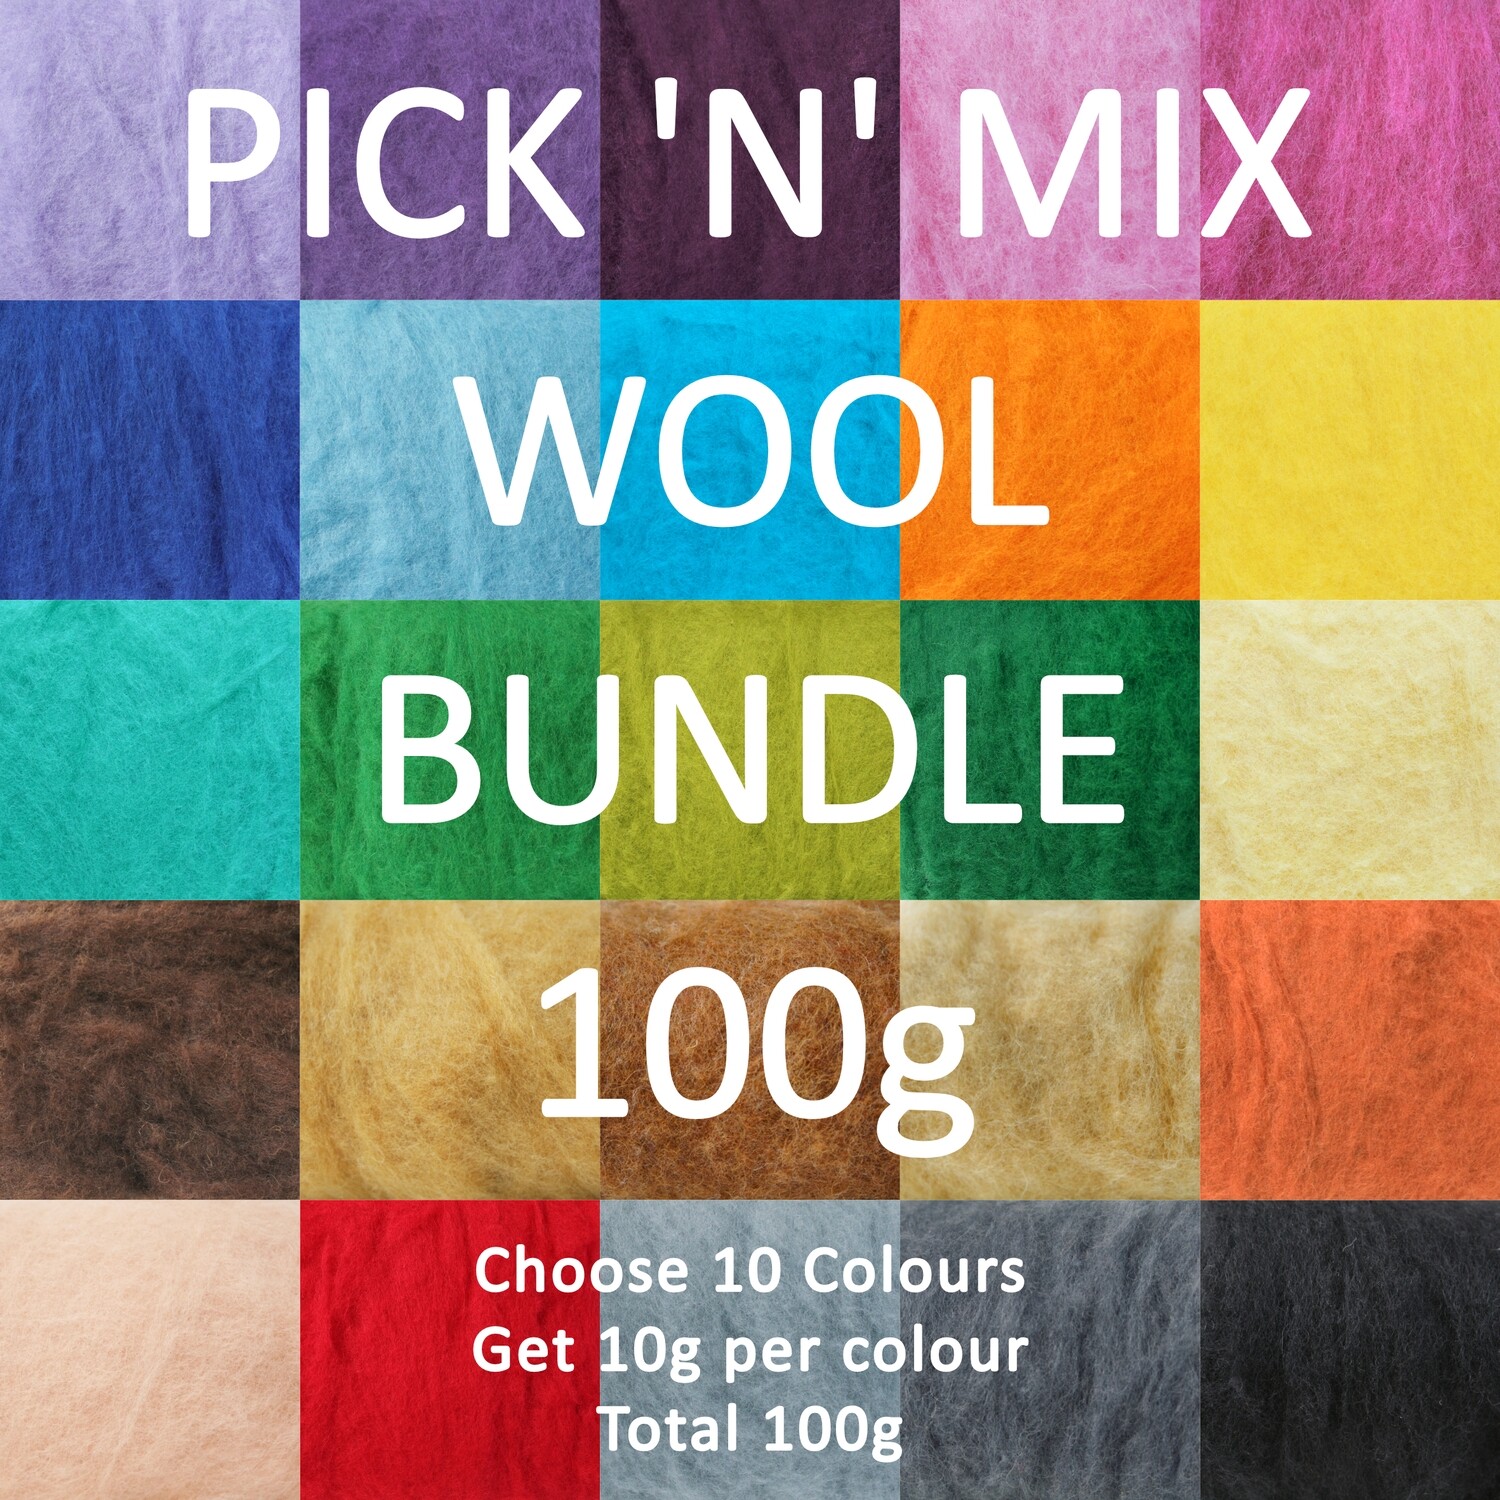 PICK 'N' MIX Wool Bundle 100g